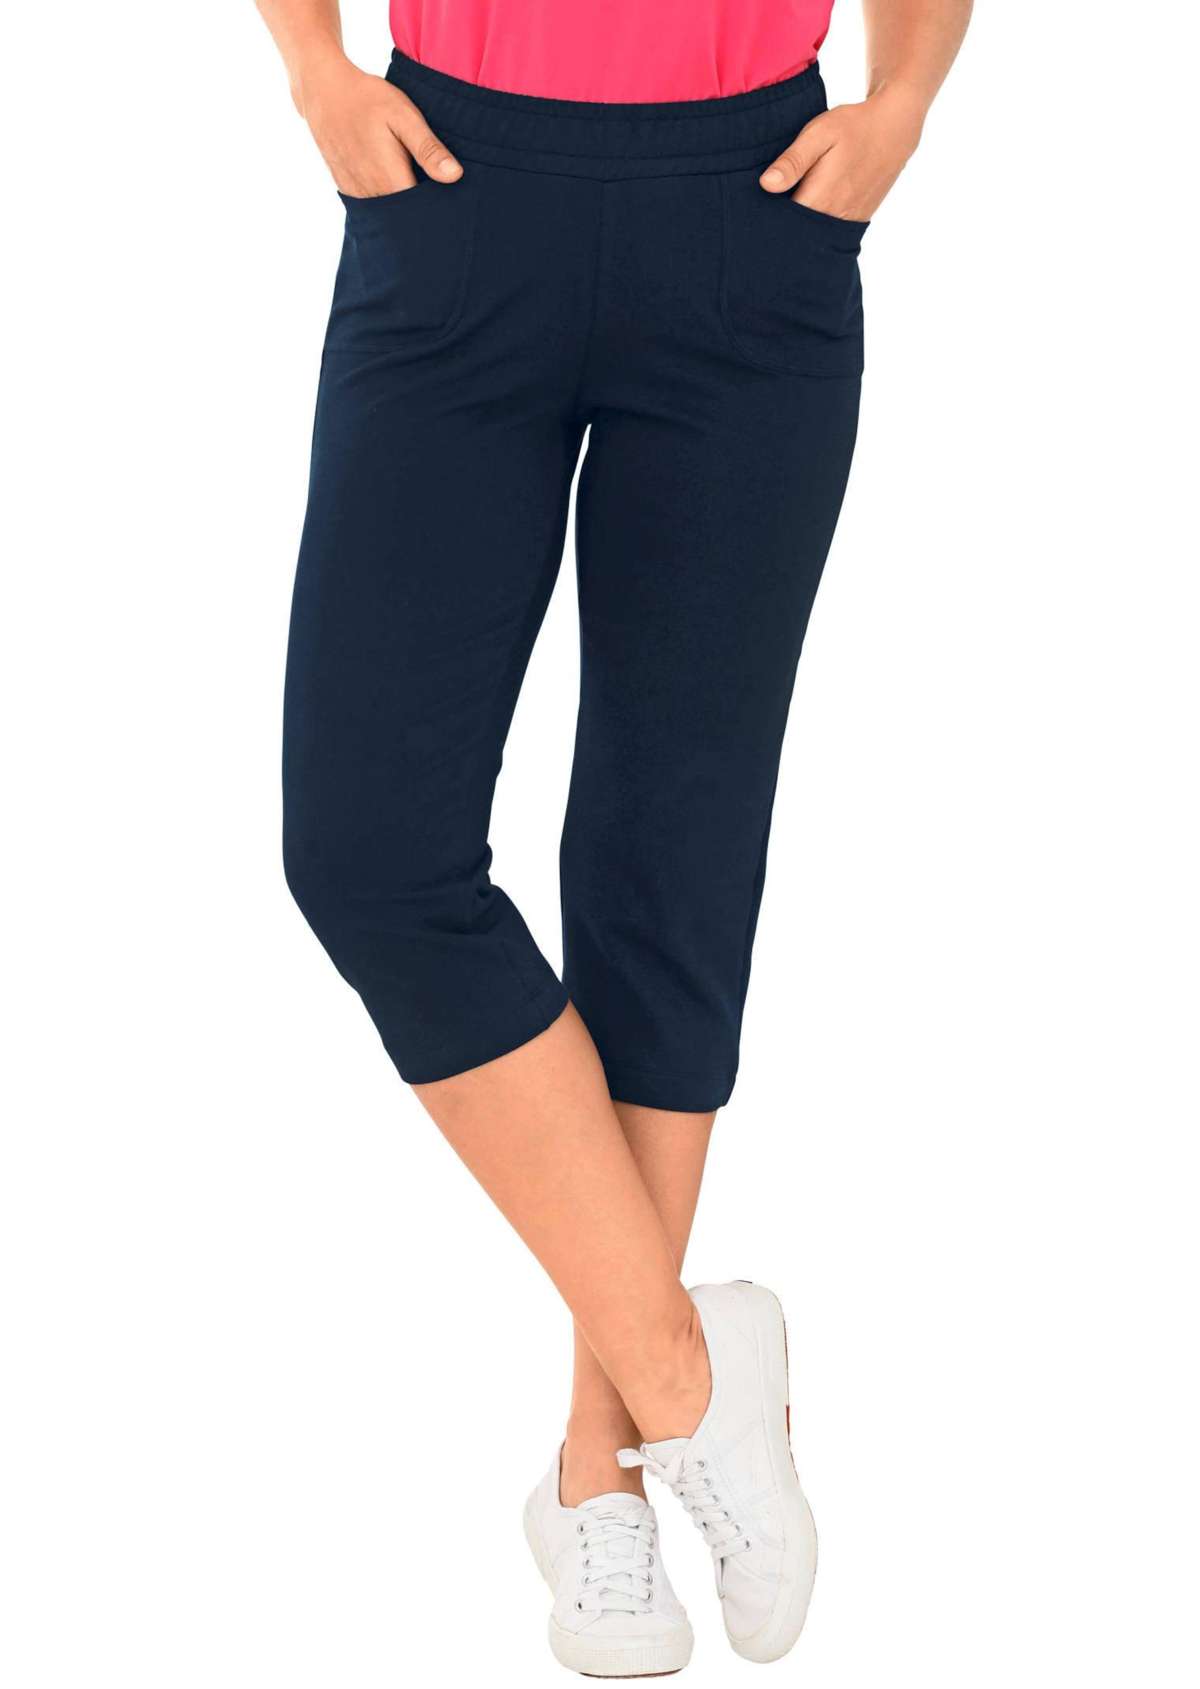 Удобные брюки для отдыха длиной 3/4 с пристегивающимся поясом и карманами.